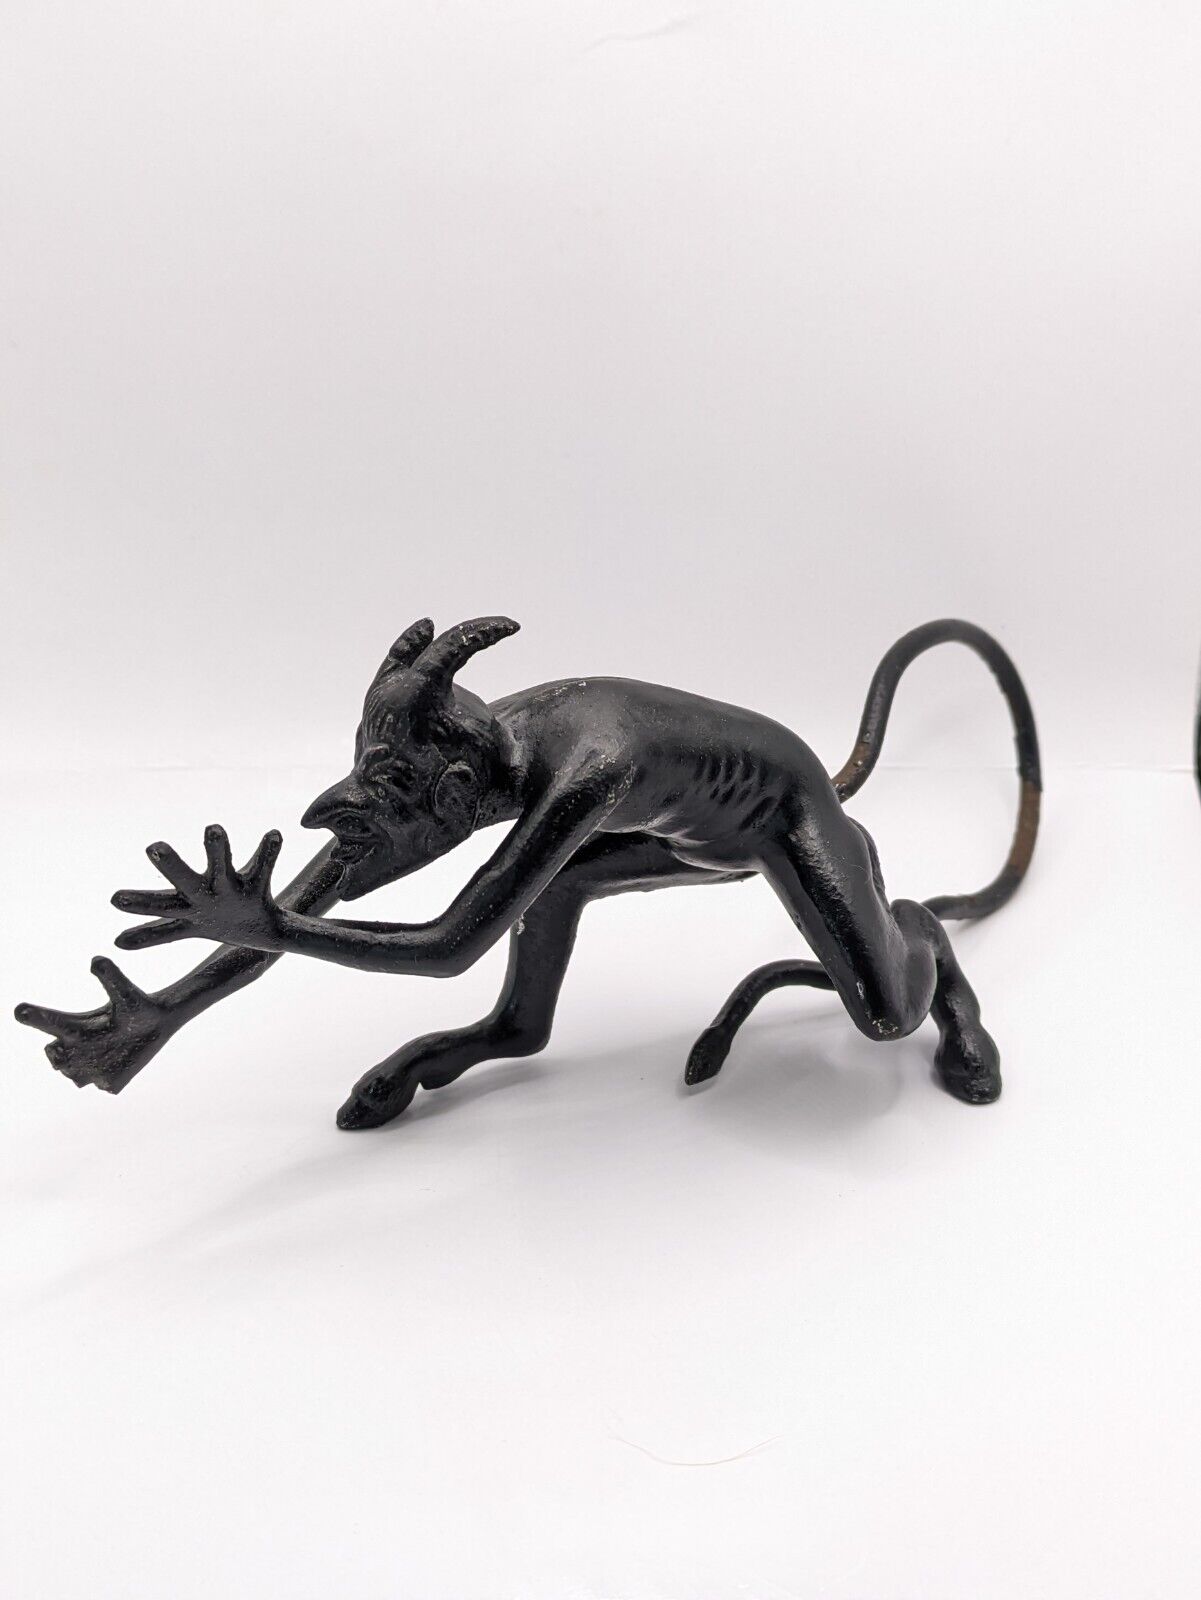 Vintage figurine Kasli devil Mephistopheles demon figurine USSR cast iron